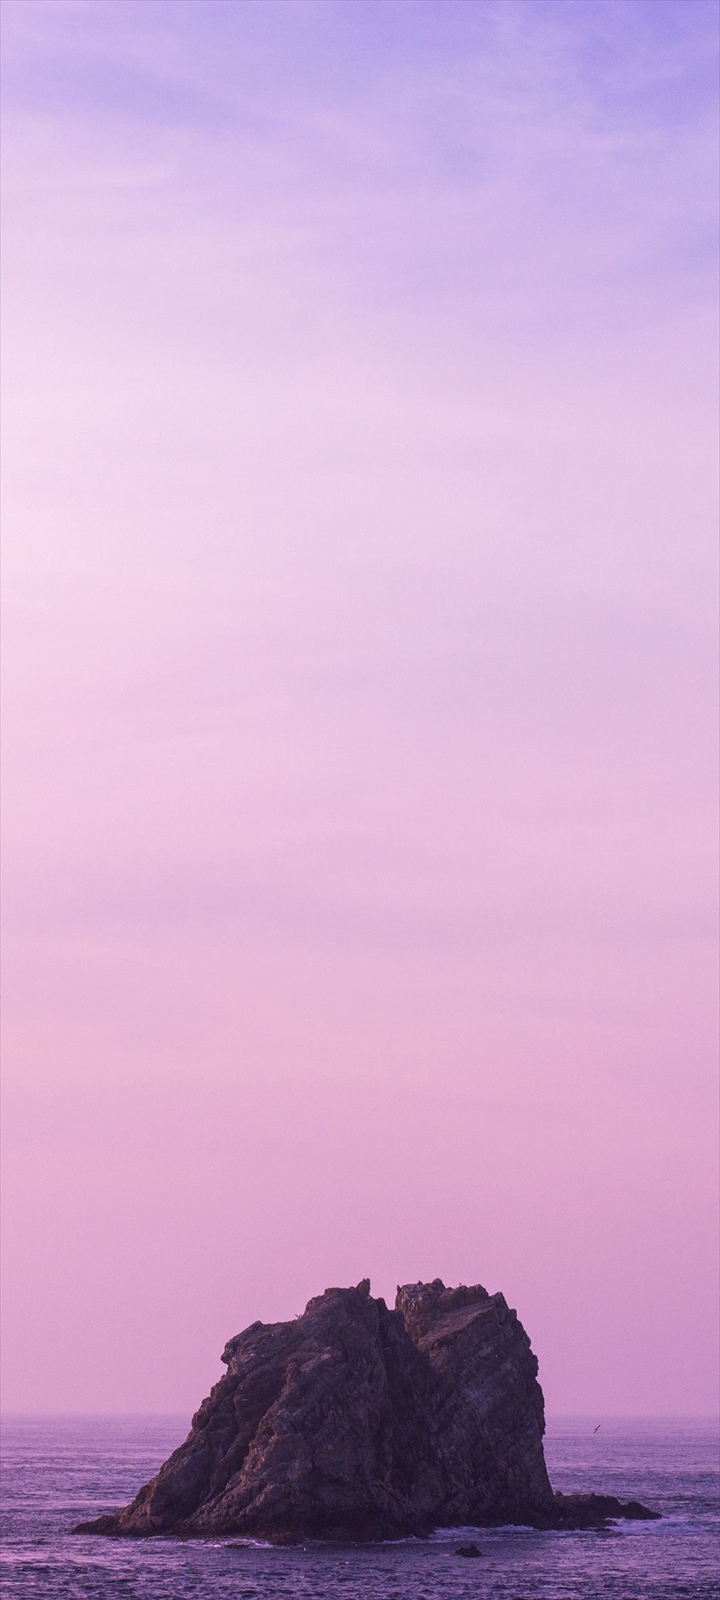 ゴツゴツした岩の孤島 紫の空 Galaxy A32 5g Androidスマホ壁紙 待ち受け スマラン